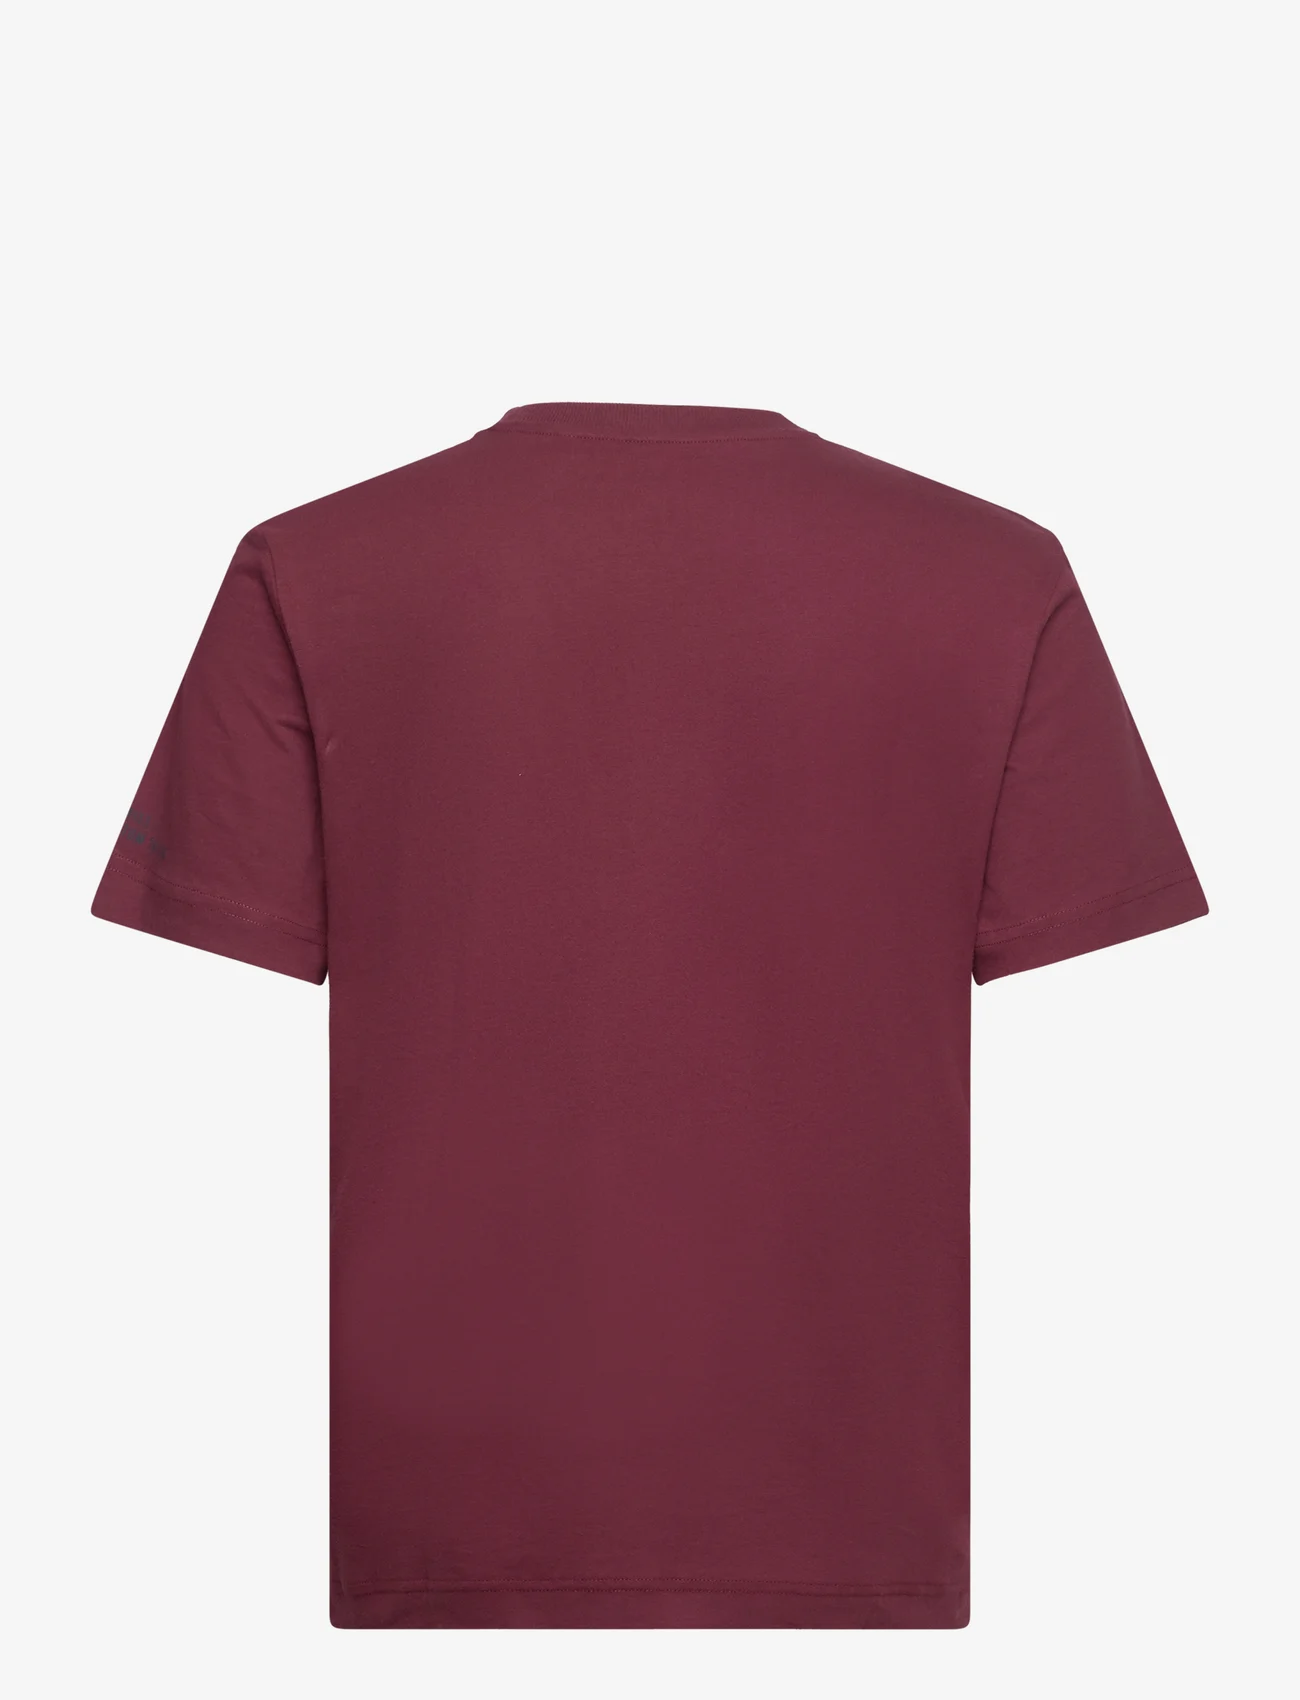 Tom Tailor - printed t-shirt - lägsta priserna - tawny port red - 1